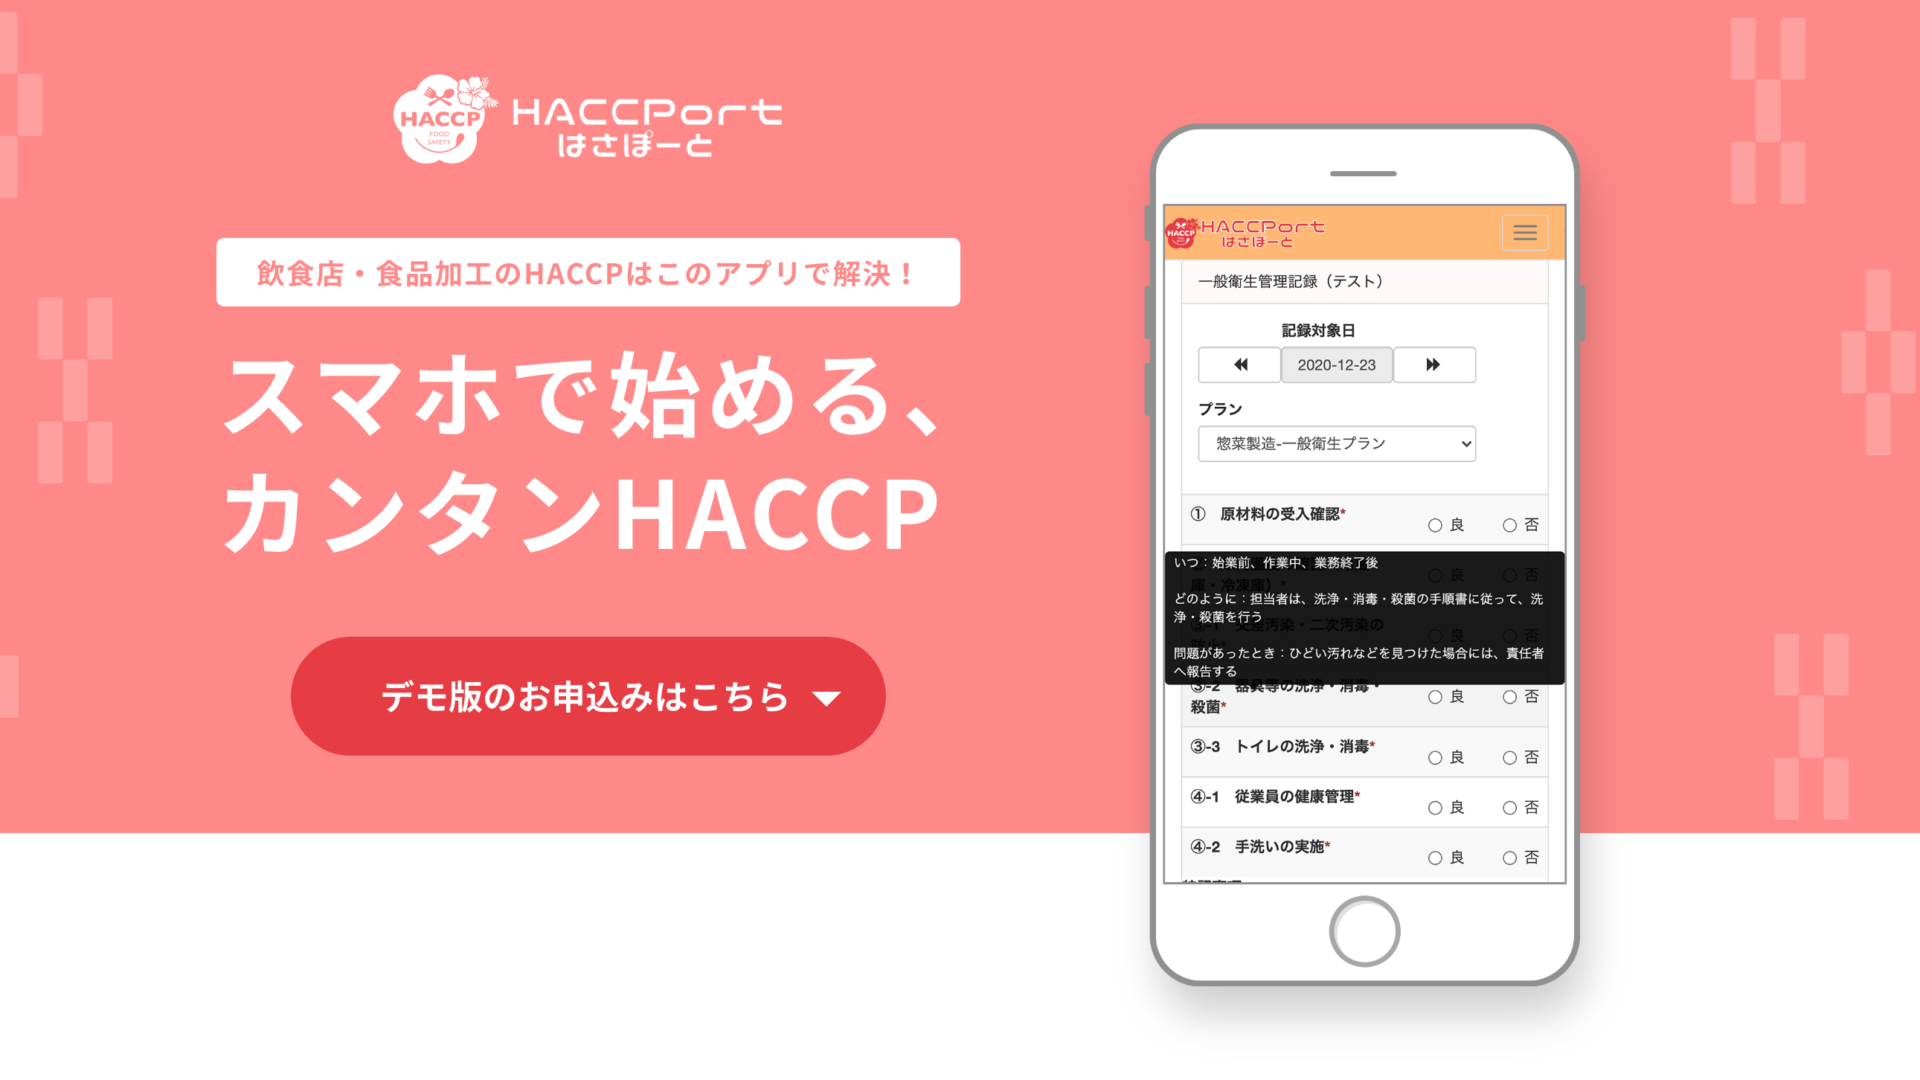 HACCPort（はさぽーと）飲食店・食品加工のHACCPはこのアプリで解決！スマホで始める、カンタンHACCP、デモ版のお申し込みはこちら